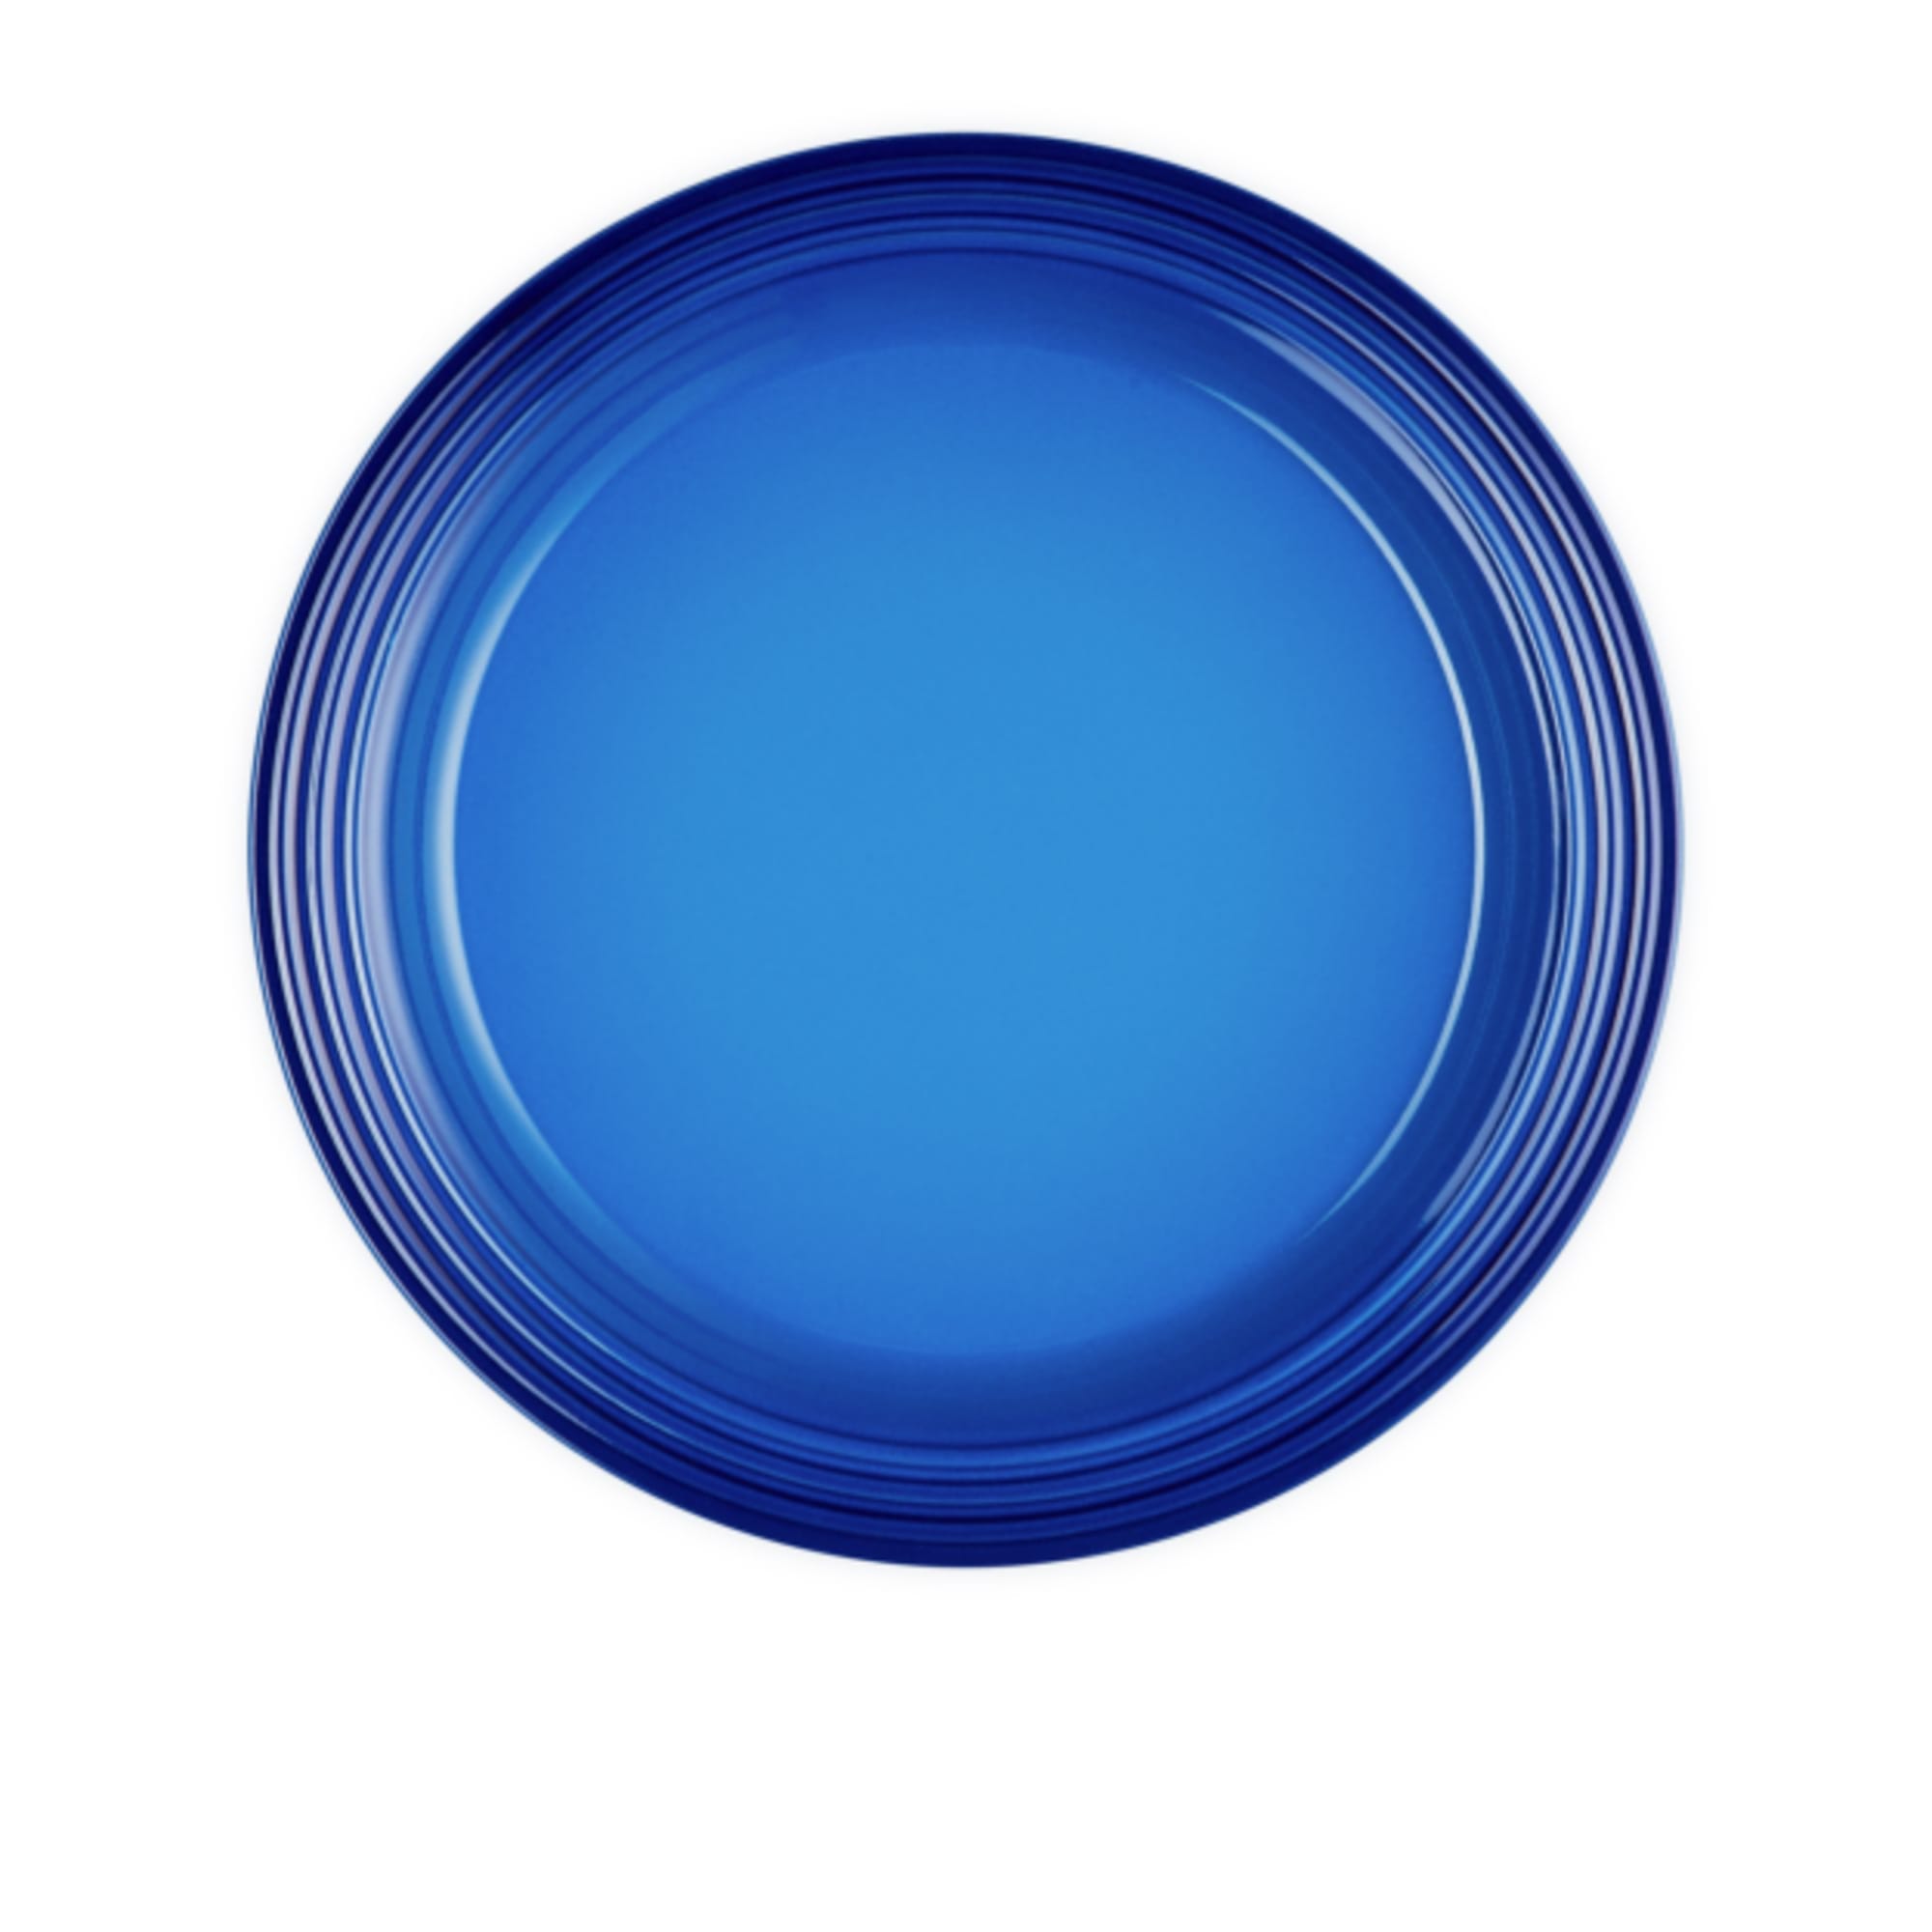 Le Creuset Bouilloire Tradition - Azure Blu